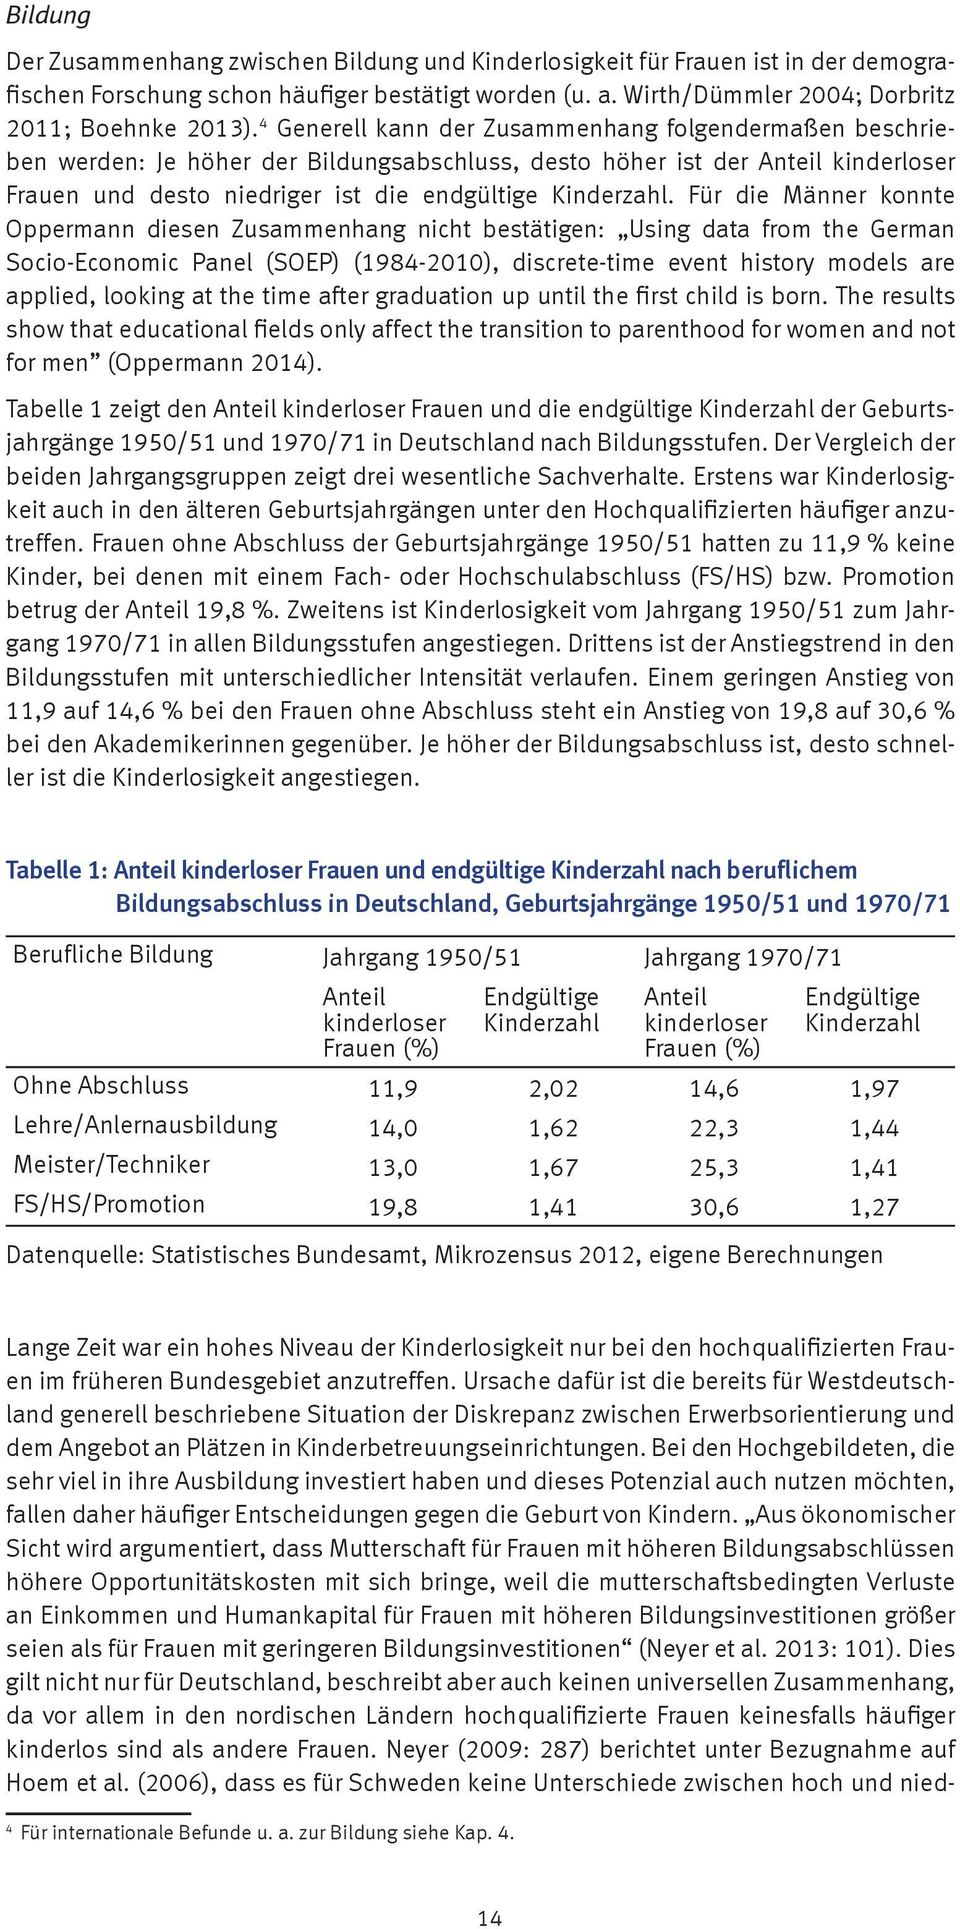 Für die Männer konnte Oppermann diesen Zusammenhang nicht bestätigen: Using data from the German Socio-Economic Panel (SOEP) (1984-2010), discrete-time event history models are applied, looking at